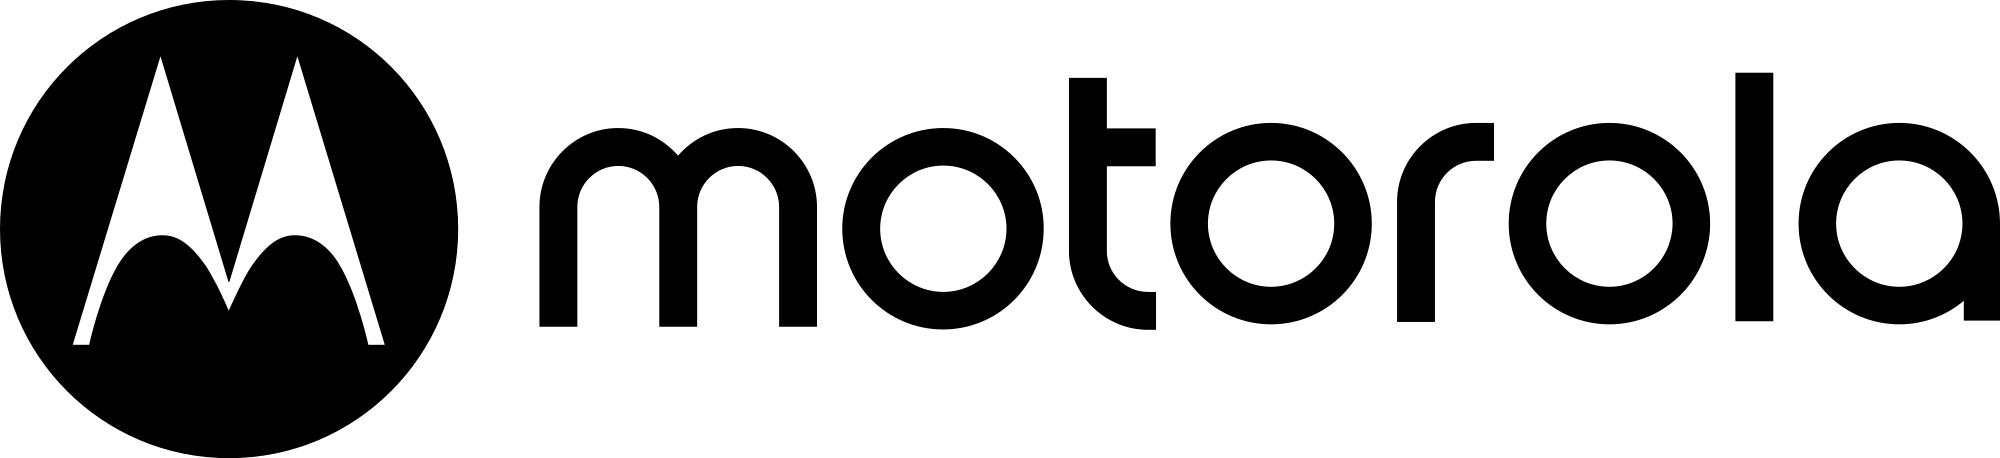 New Motorola Logo - Motorola new logo.svg